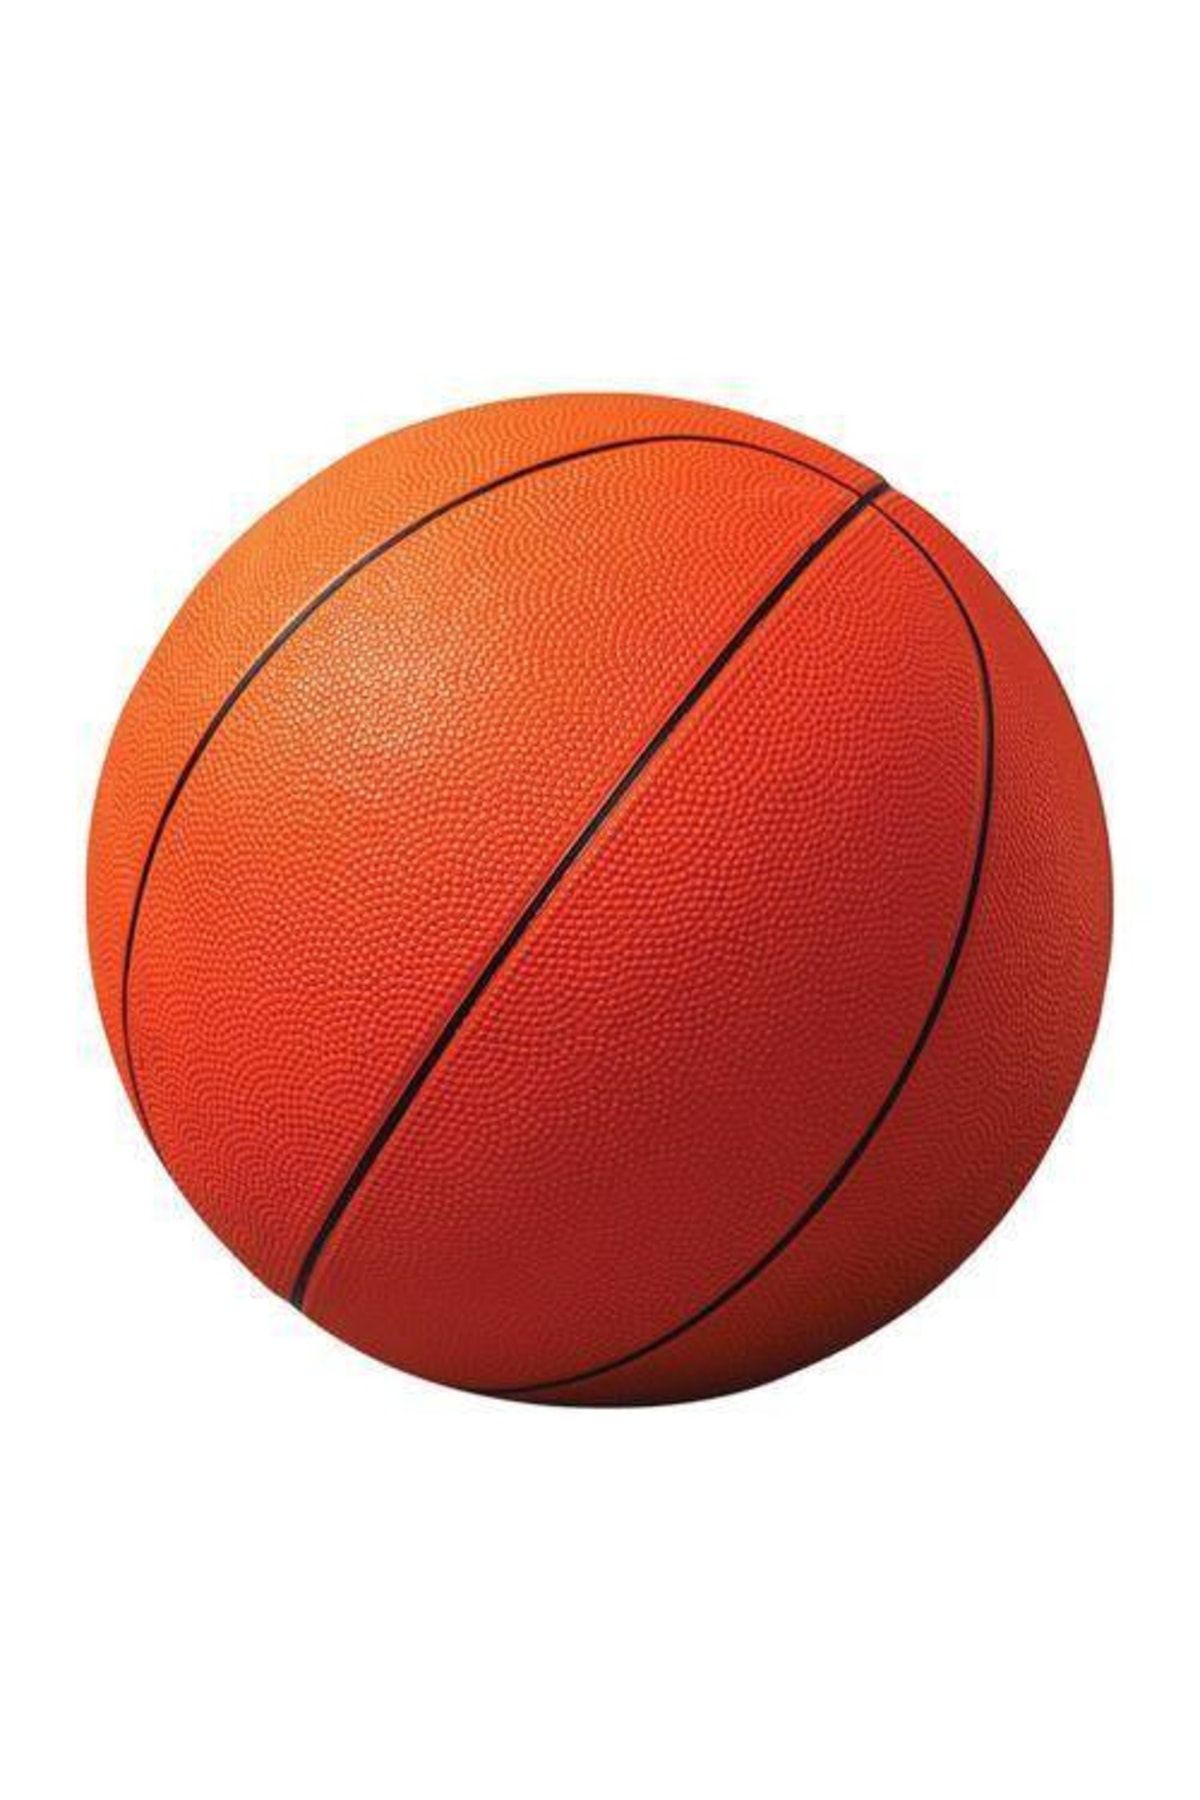 Yetkin Home Basket Maçı Çocuklar Için Profesyonel Boy Kauçuk Basketbol Topu